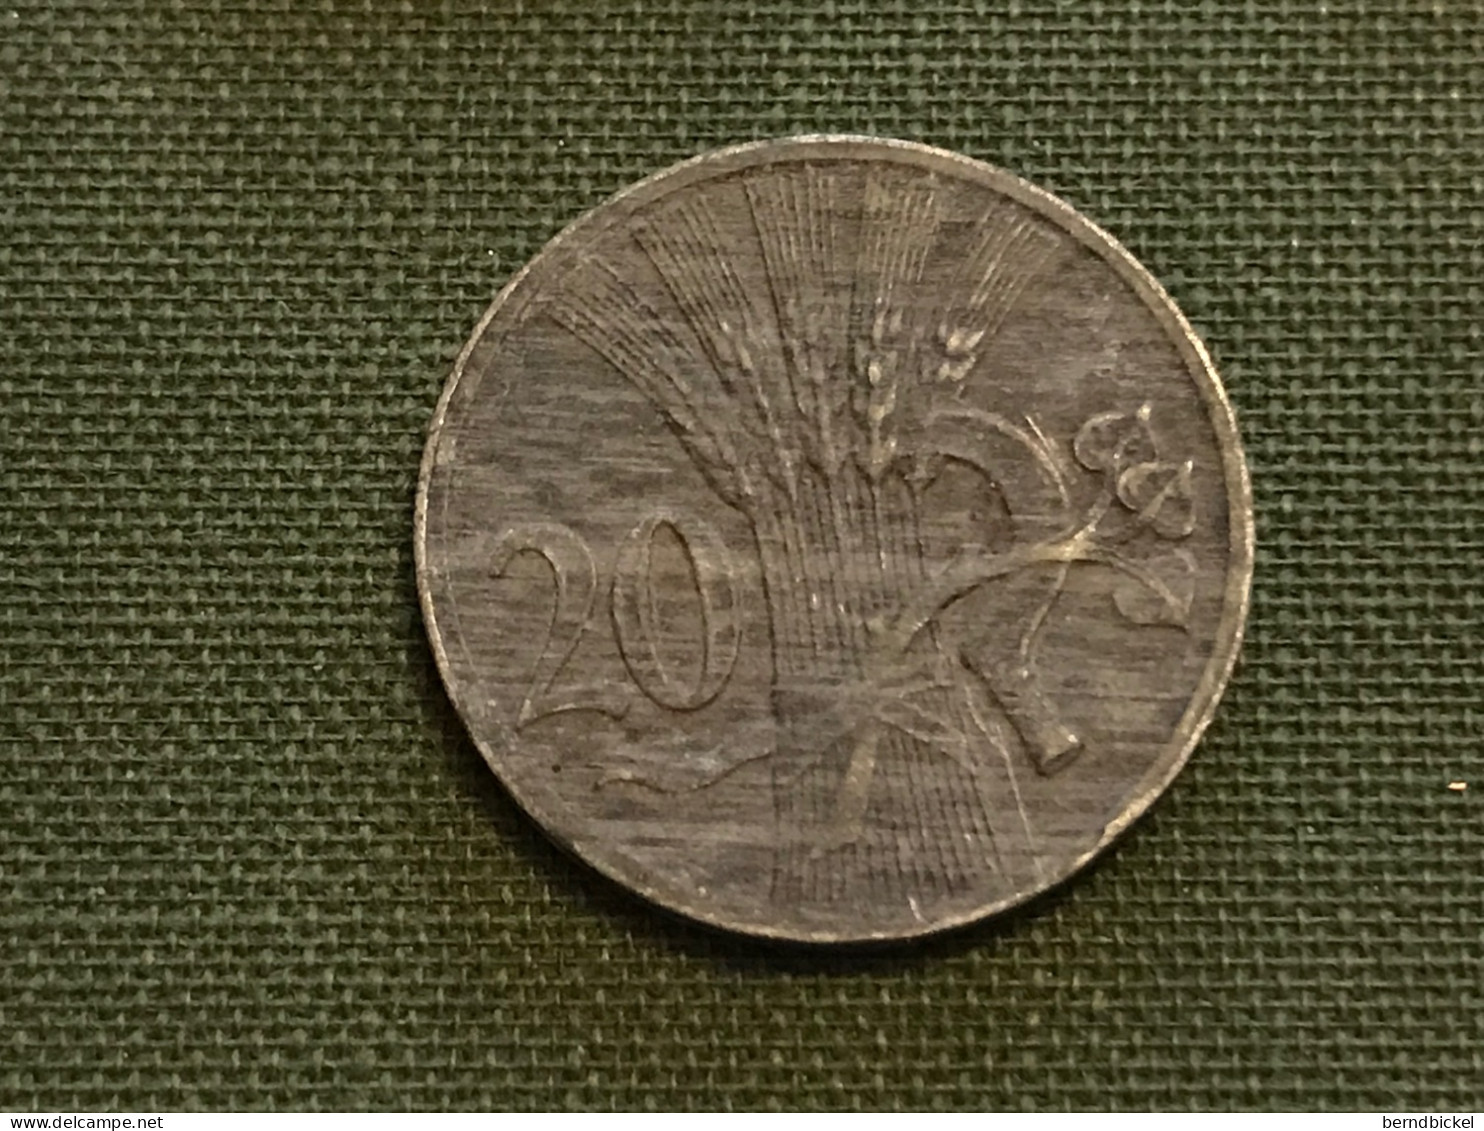 Münze Münzen Umlaufmünze Böhmen Und Mähren 20 Heller 1941 - Military Coin Minting - WWII